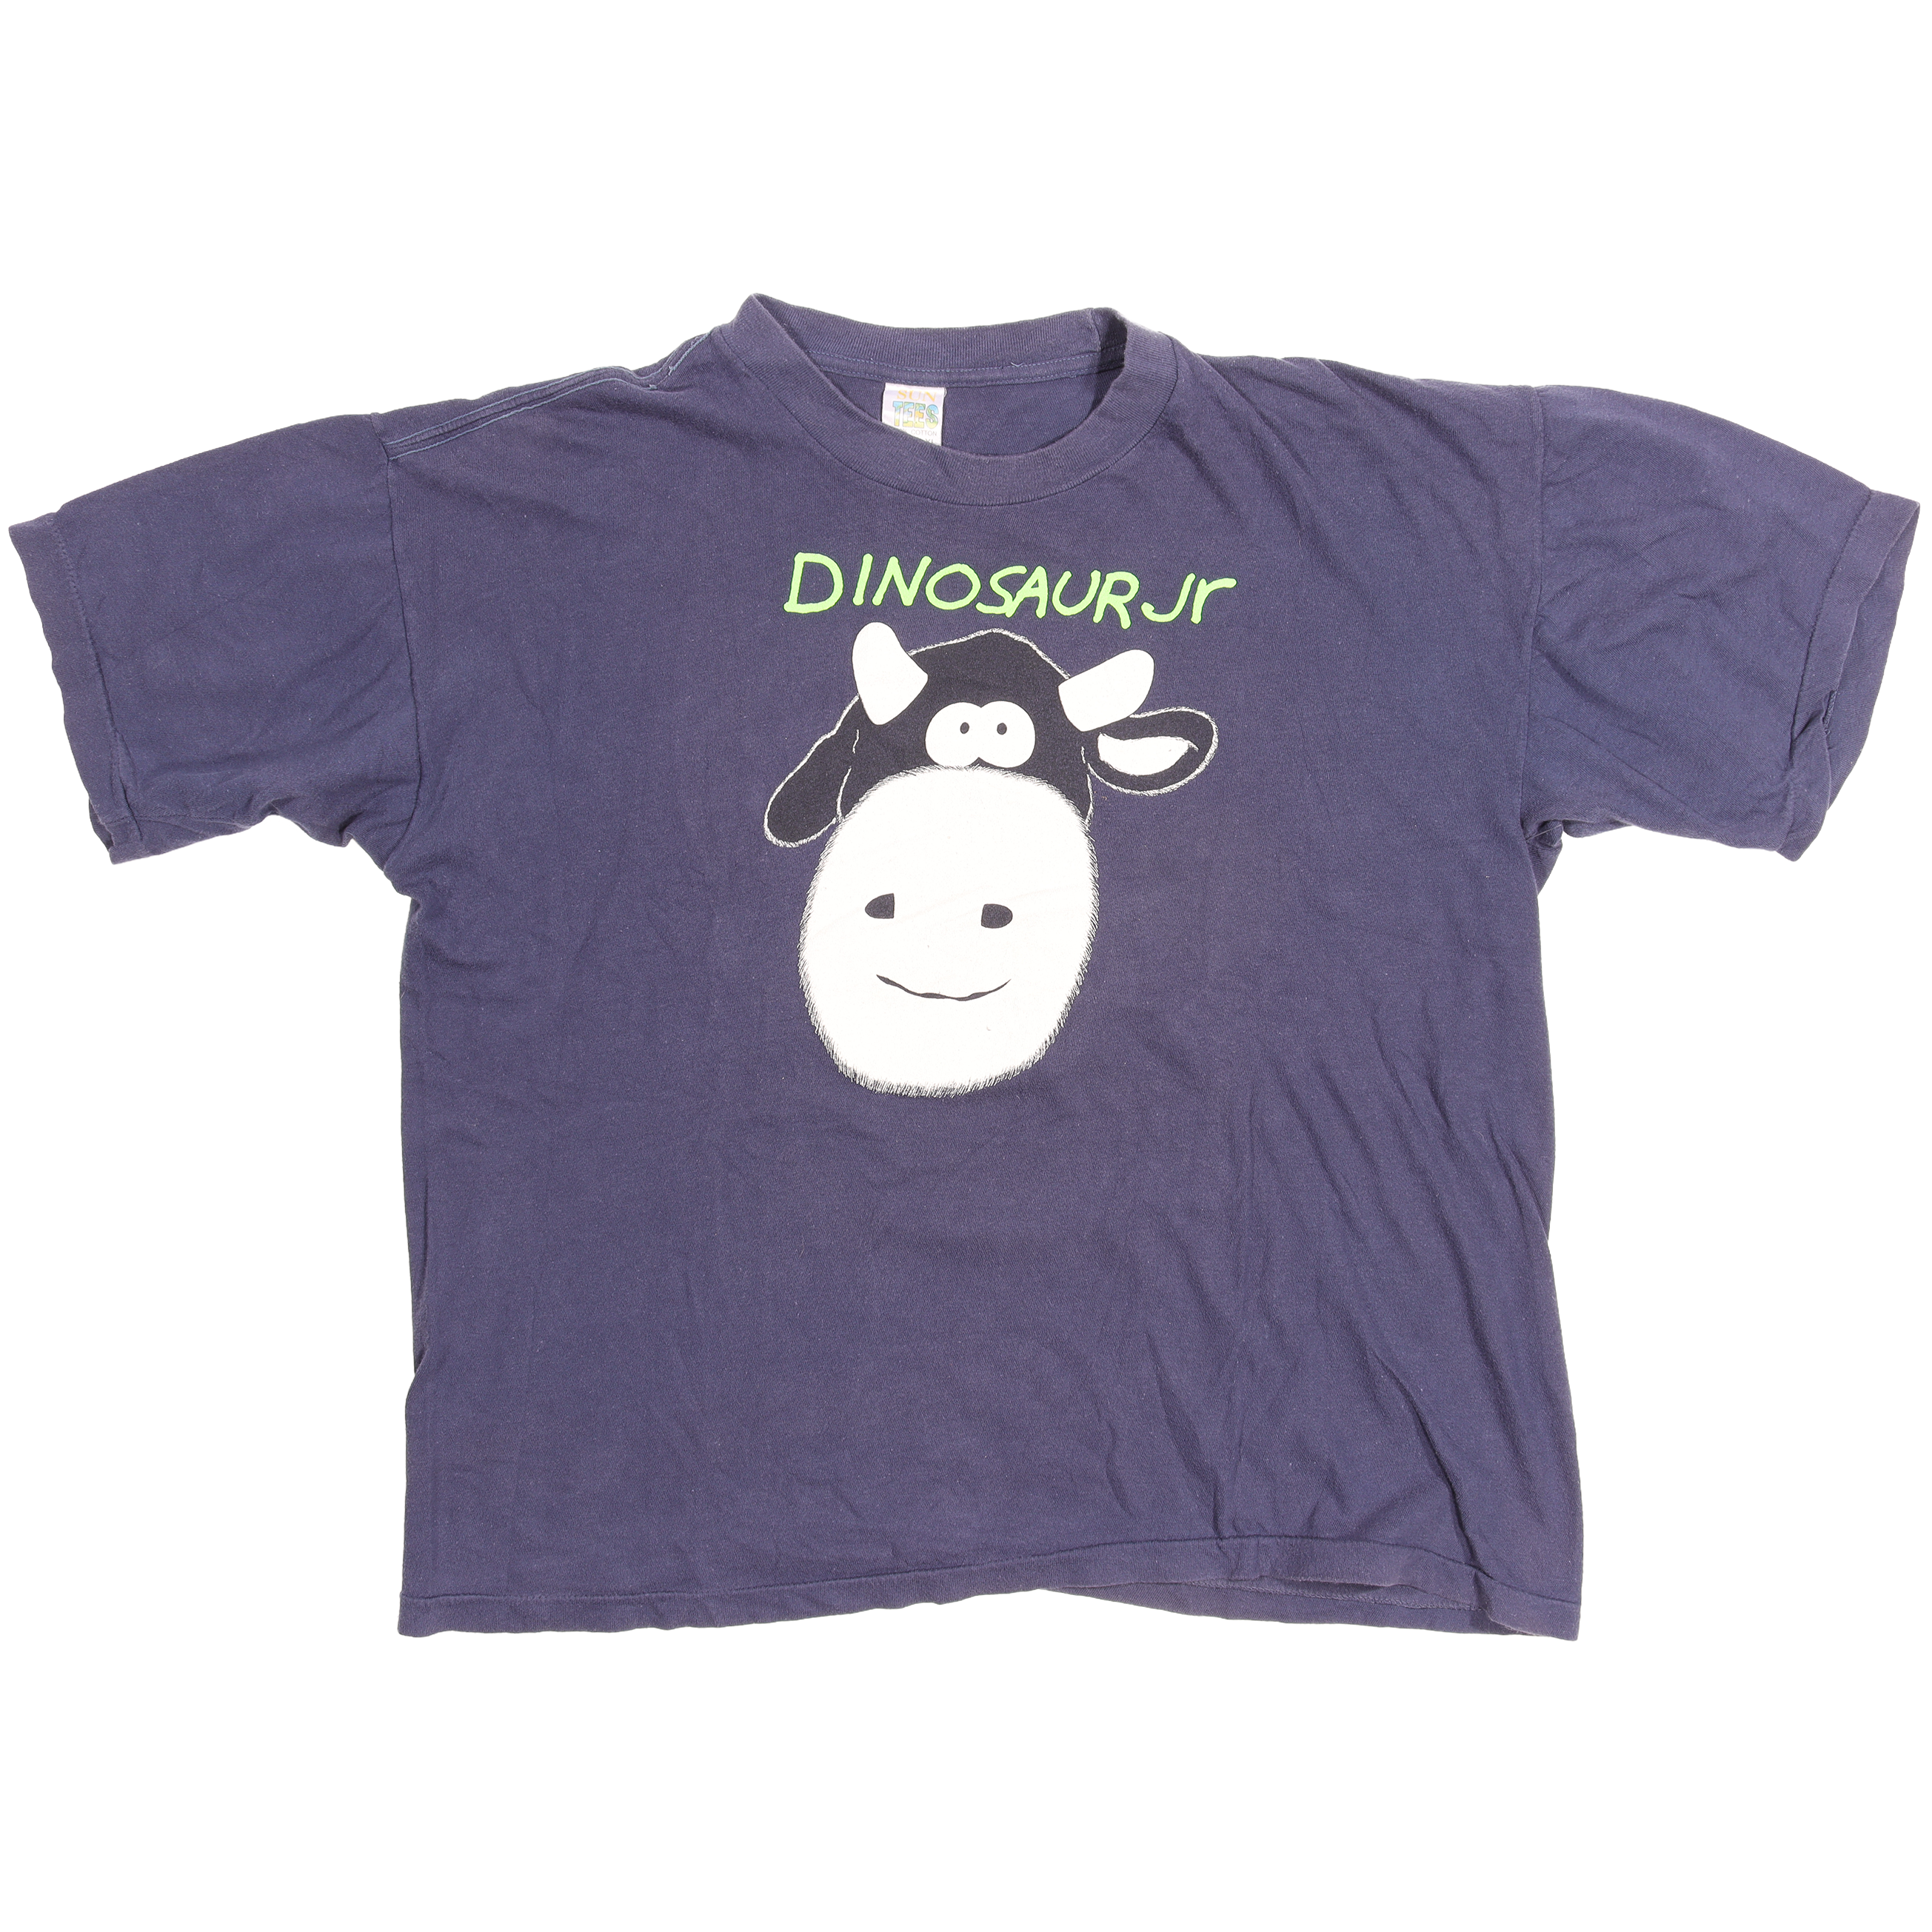 1993 Dinosaur JR 'COW' T-Shirt